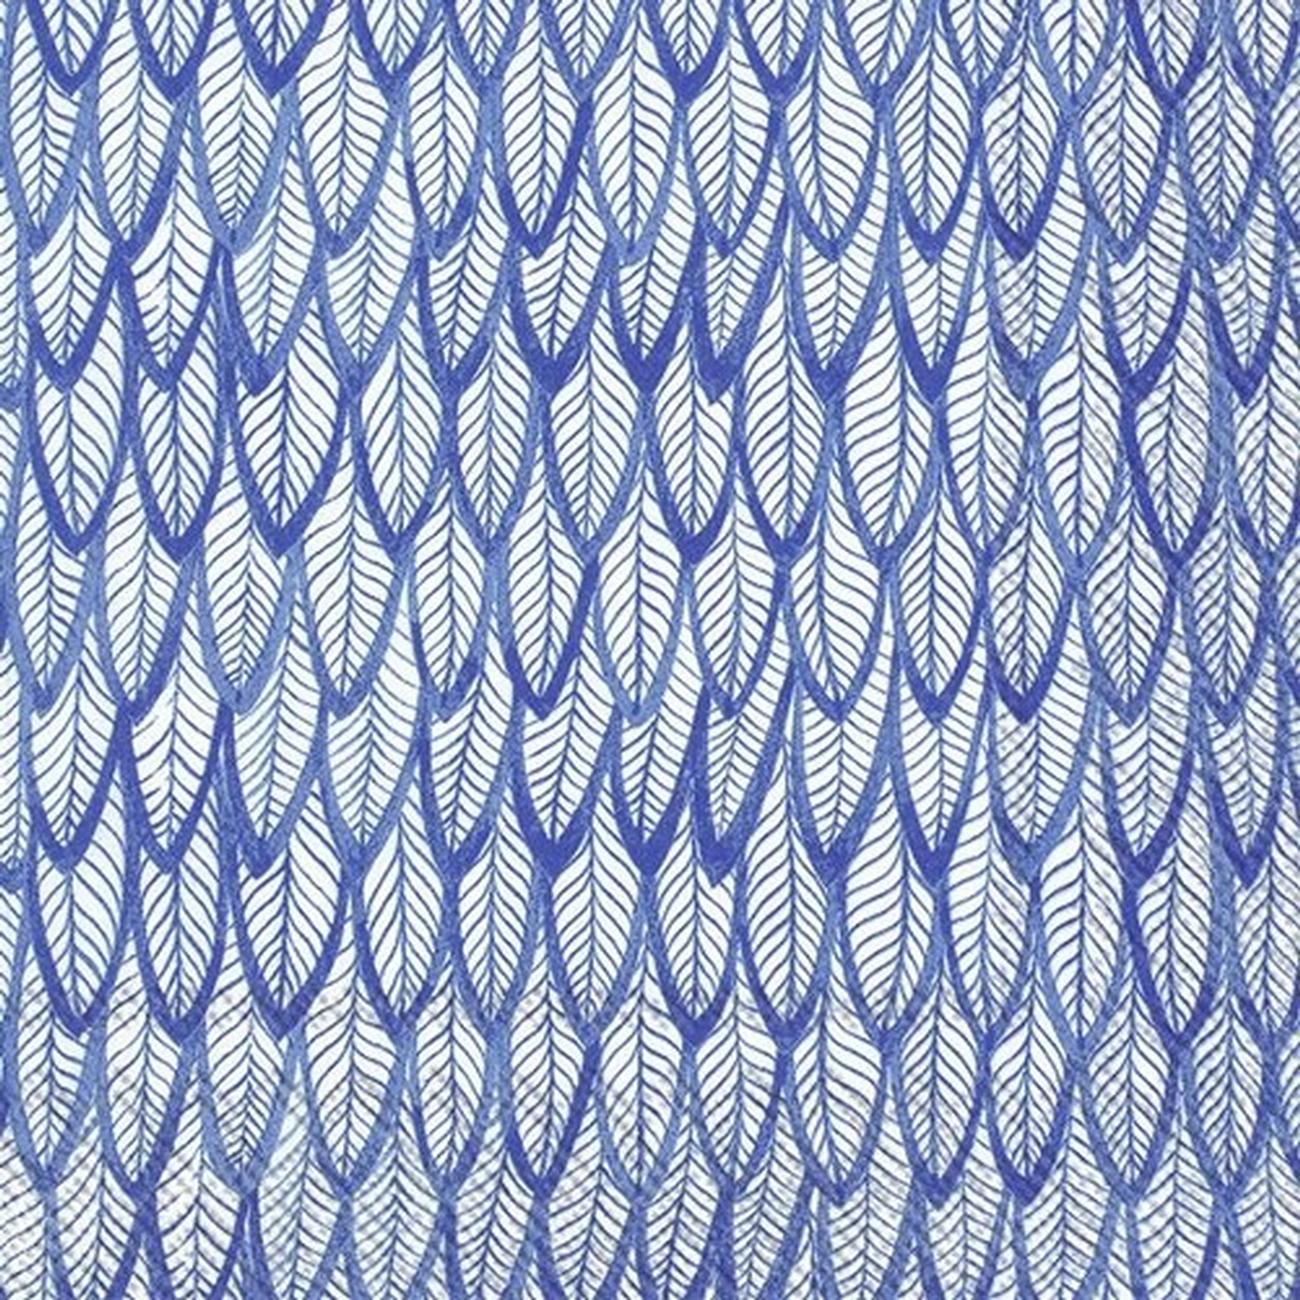 ihr-lunch-napkin-blue-feathers-blue - IHR Lunch Napkins Blue Feathers